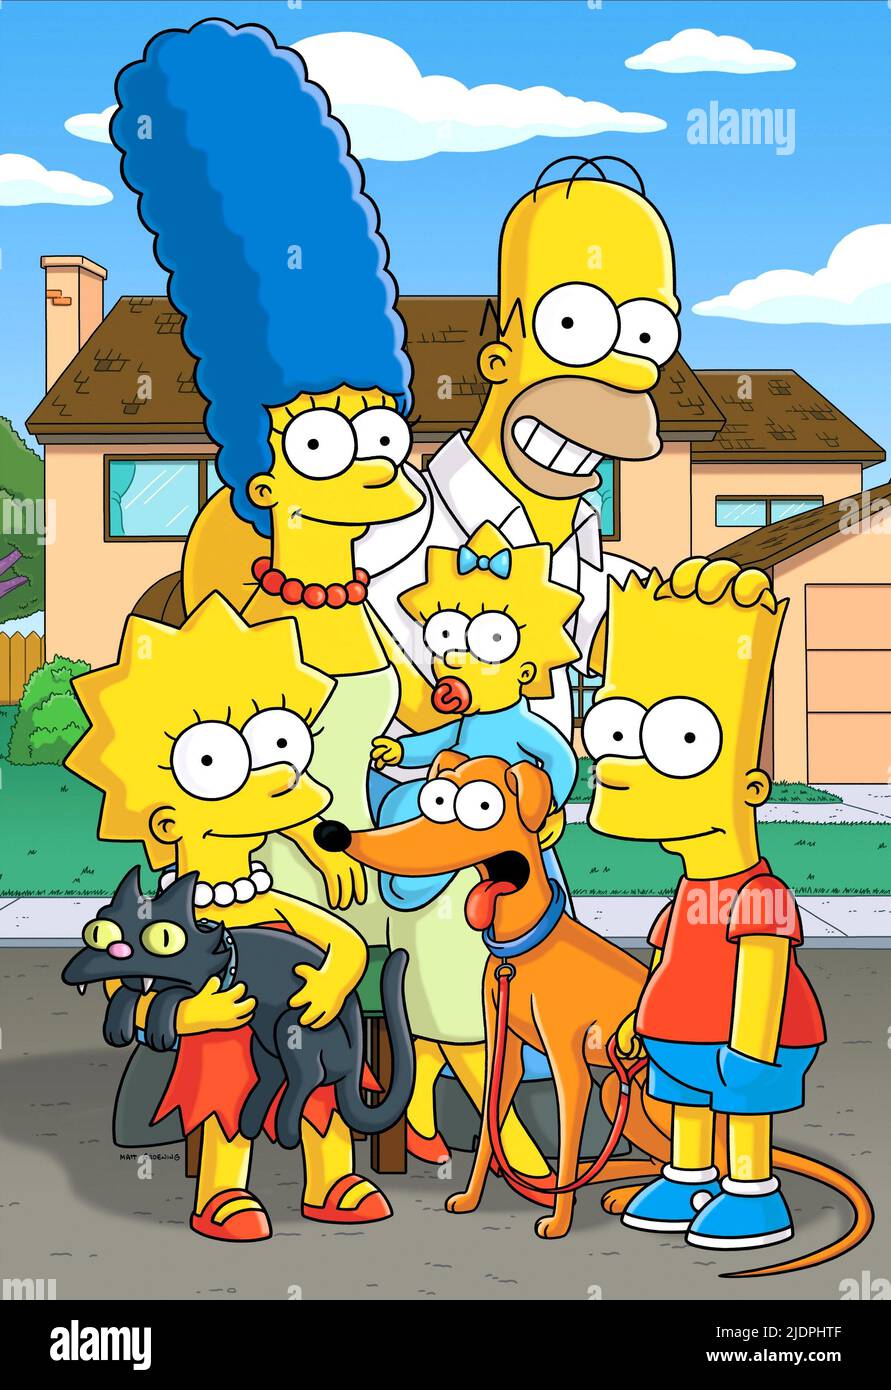 Simpsons family immagini e fotografie stock ad alta risoluzione - Alamy